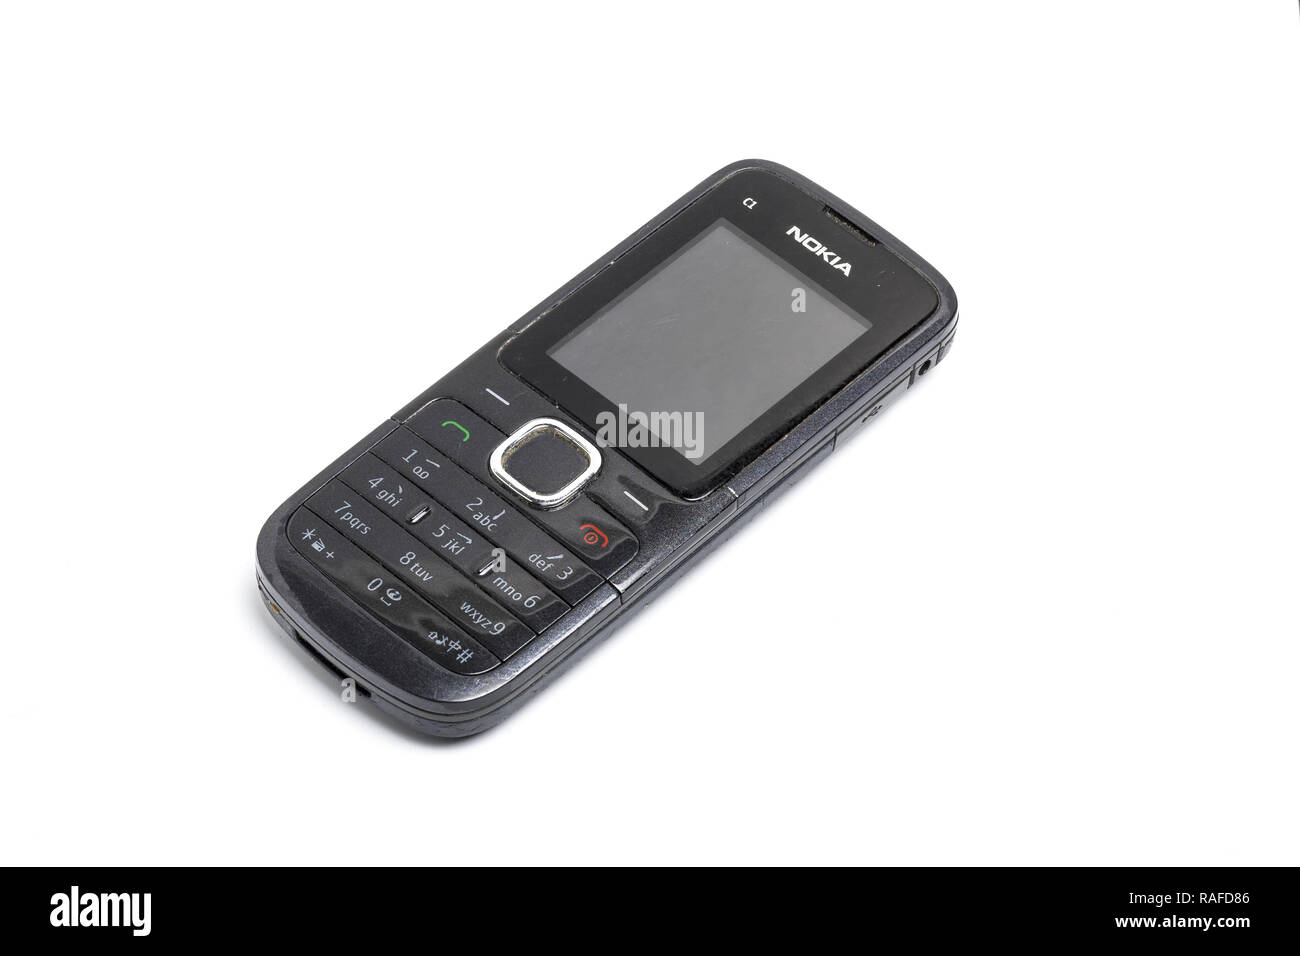 Nokia C1, teléfono móvil o teléfono celular, a partir de 2010 Foto de stock